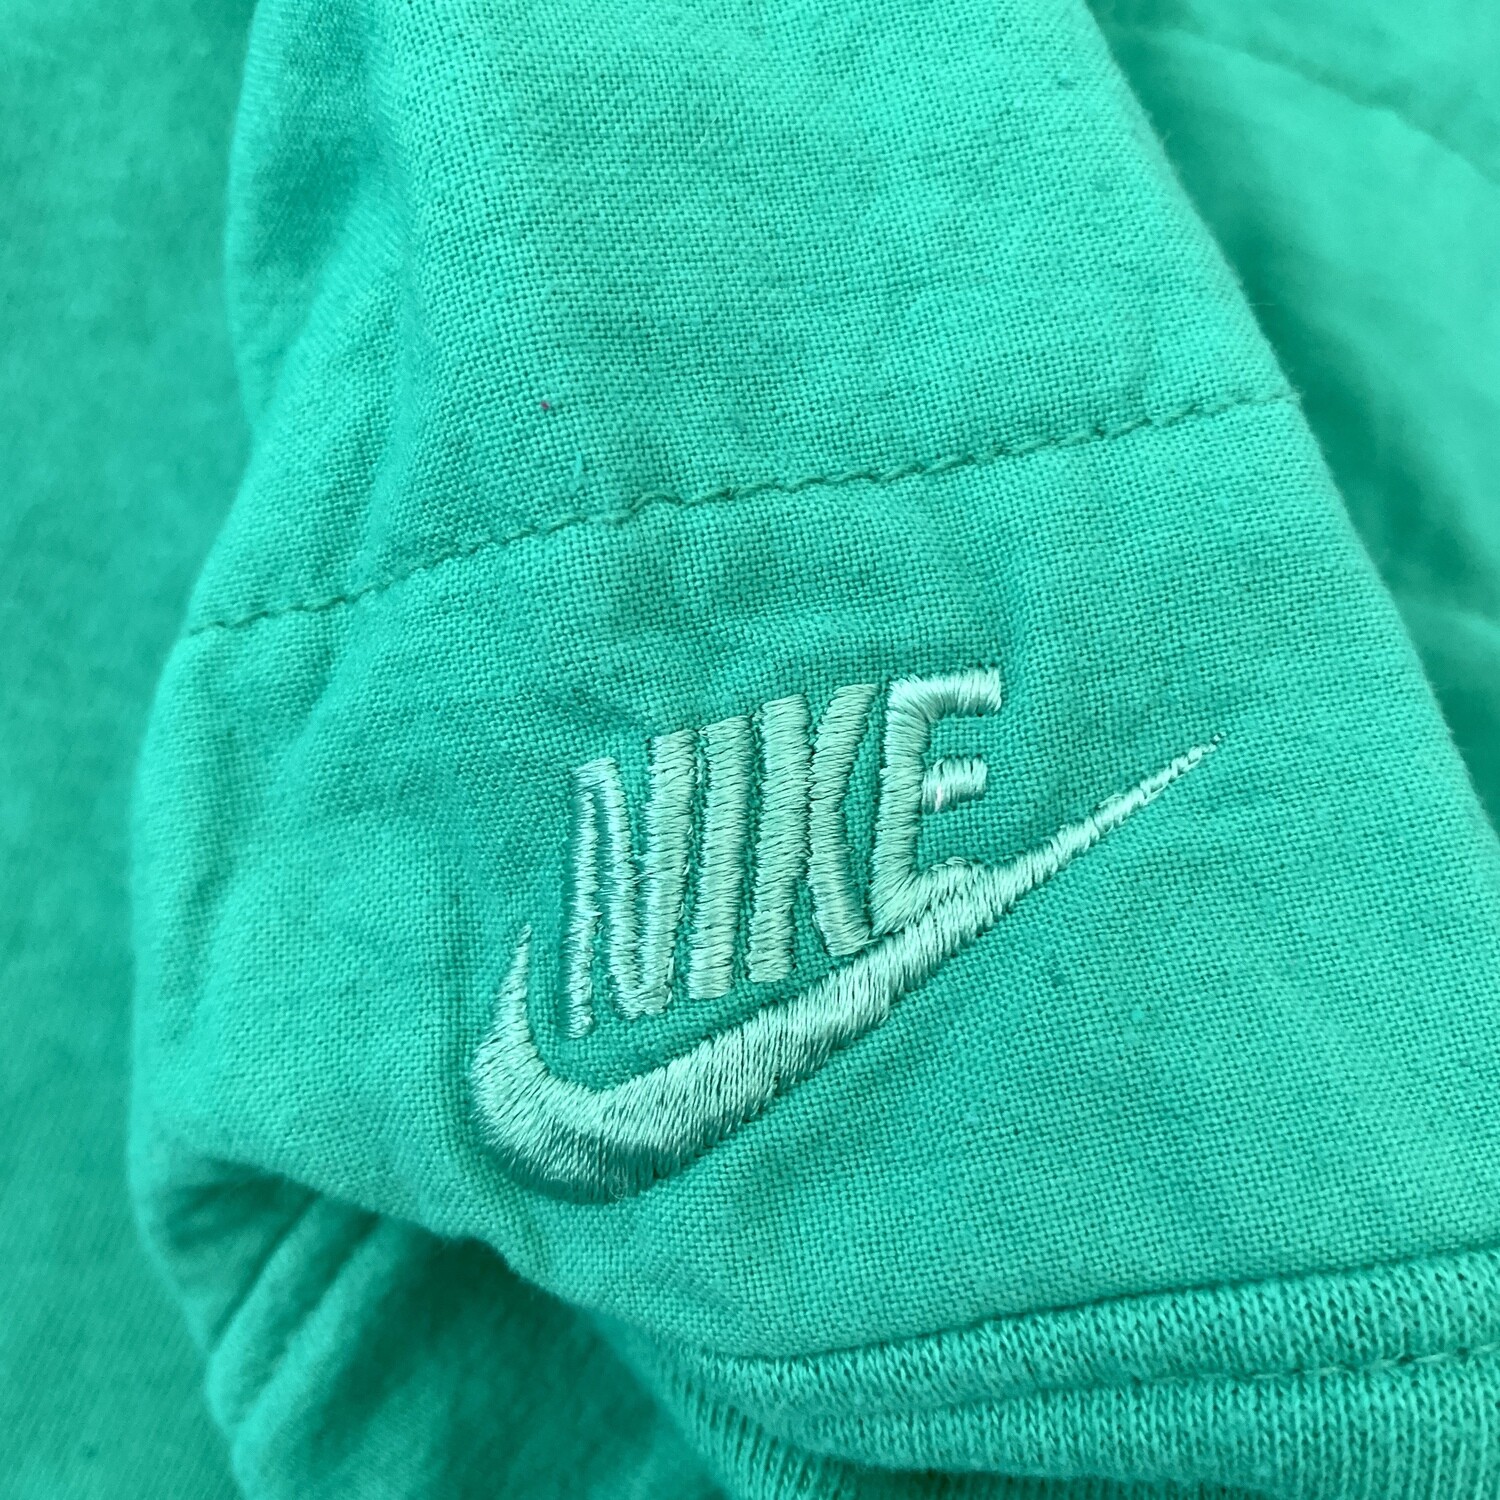 Nike Sweatshirt Vintage 1987 XXL Made in Portugal